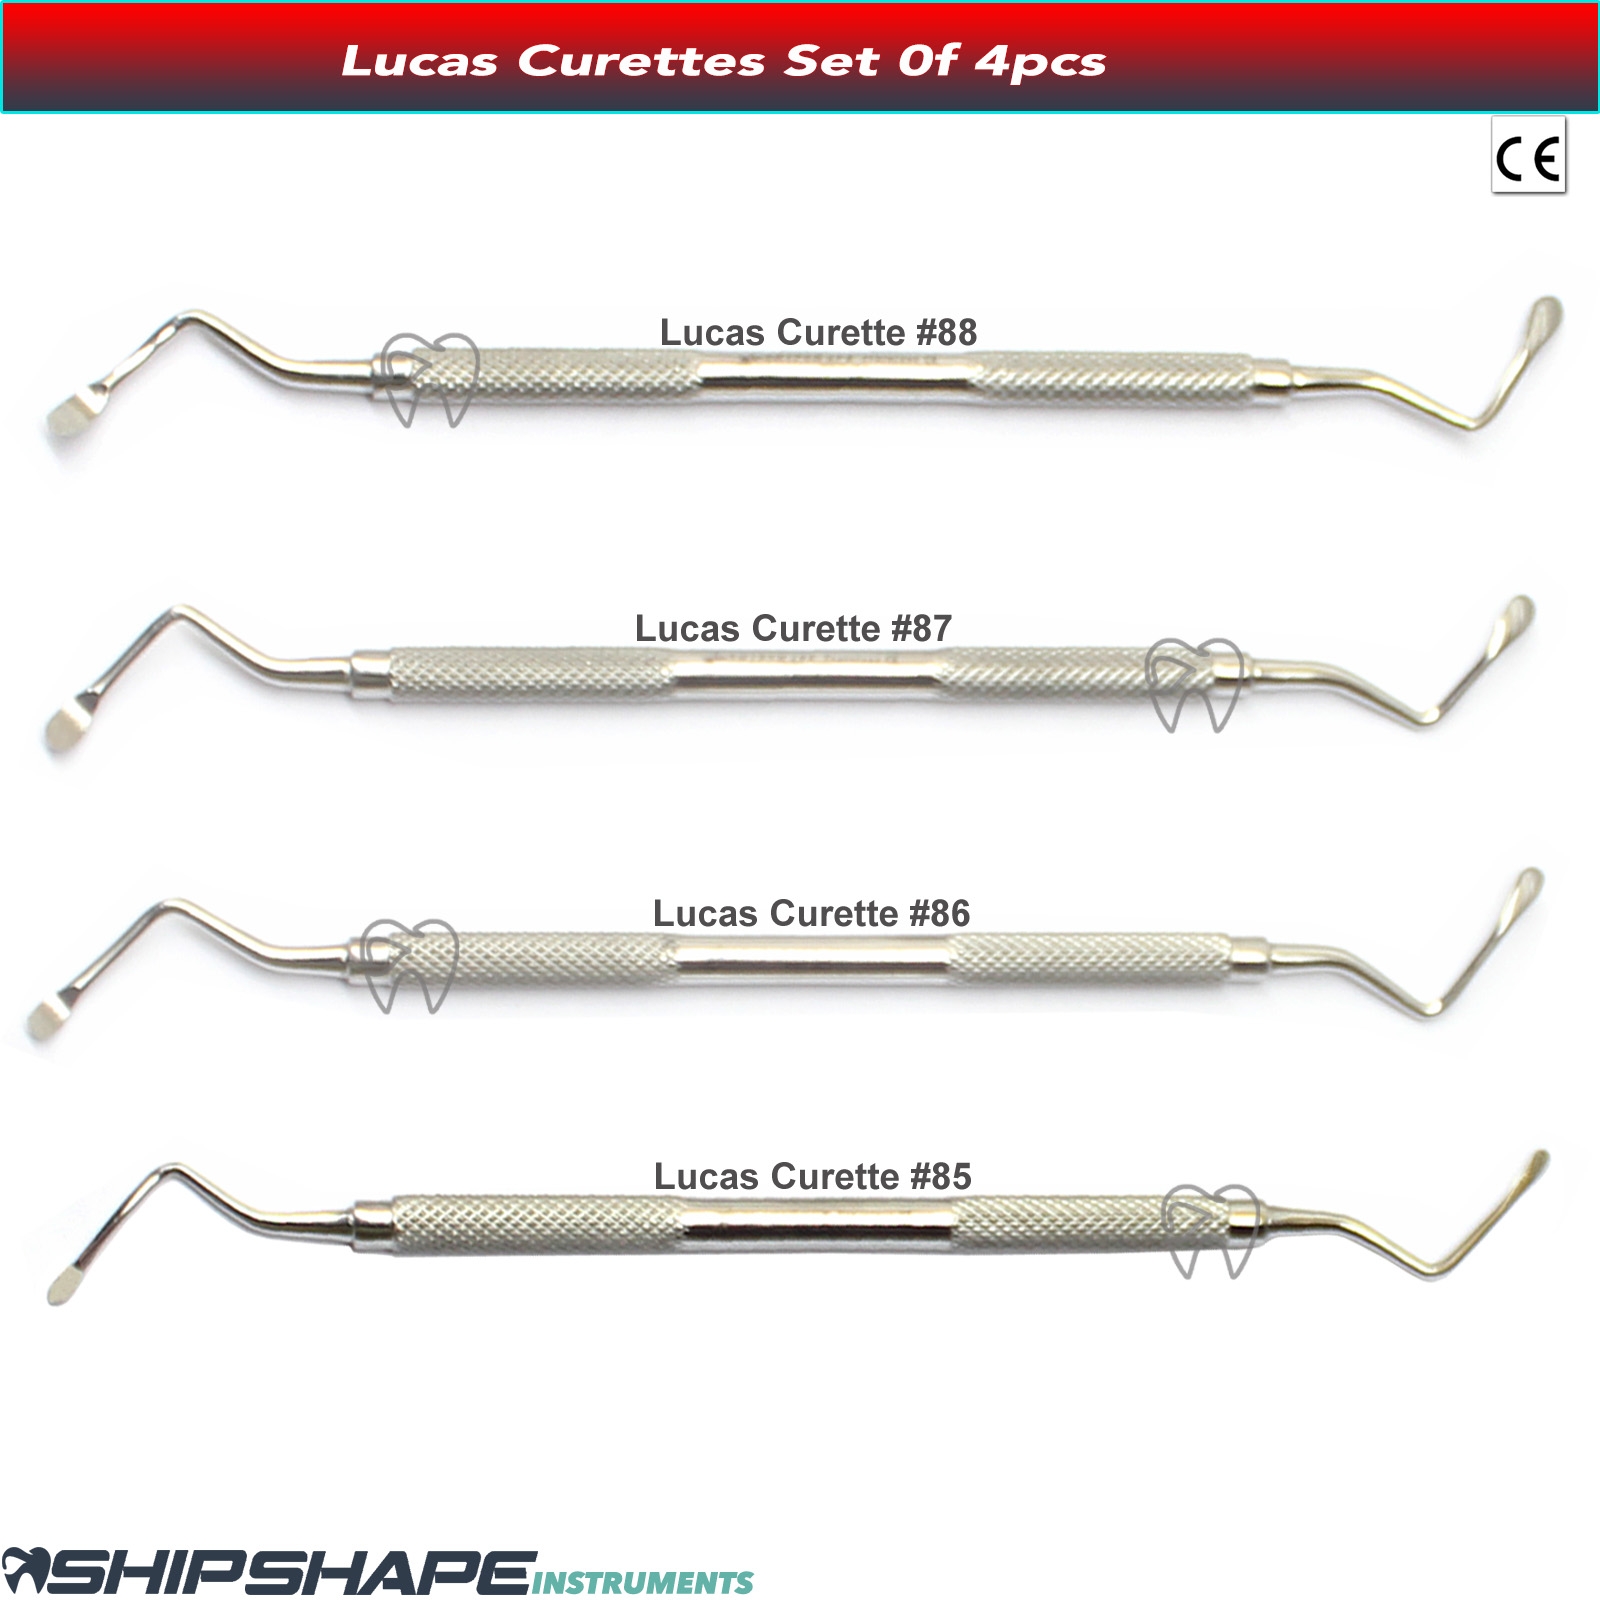 Lucas Curette Periodontal Bone Curettes Dental Surgical Instruments Fig no. #85, #86, #87, #88-0